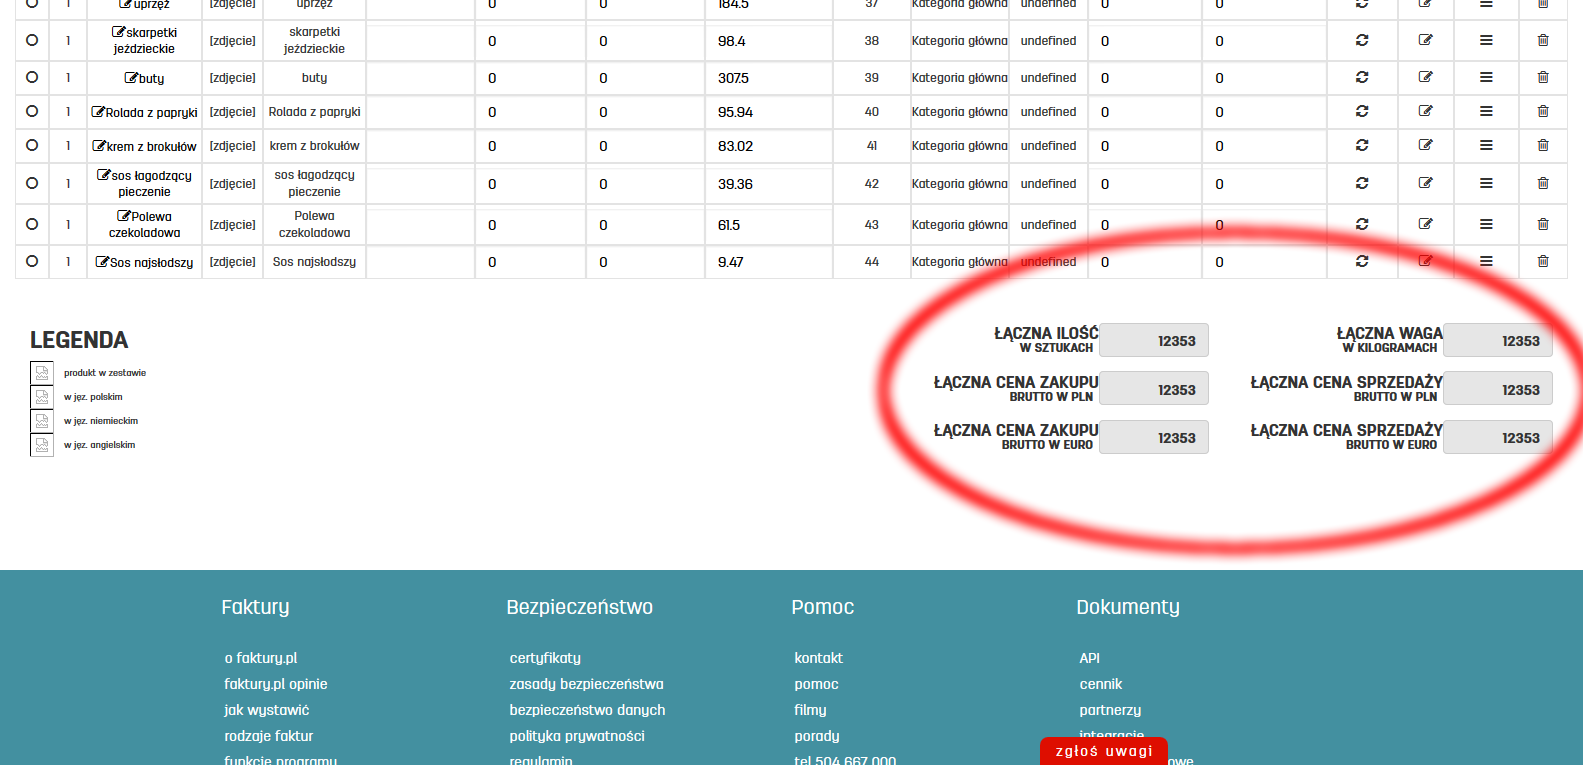 Podsumowanie produktów w oprogramowaniu do fakturowania online faktury.pl